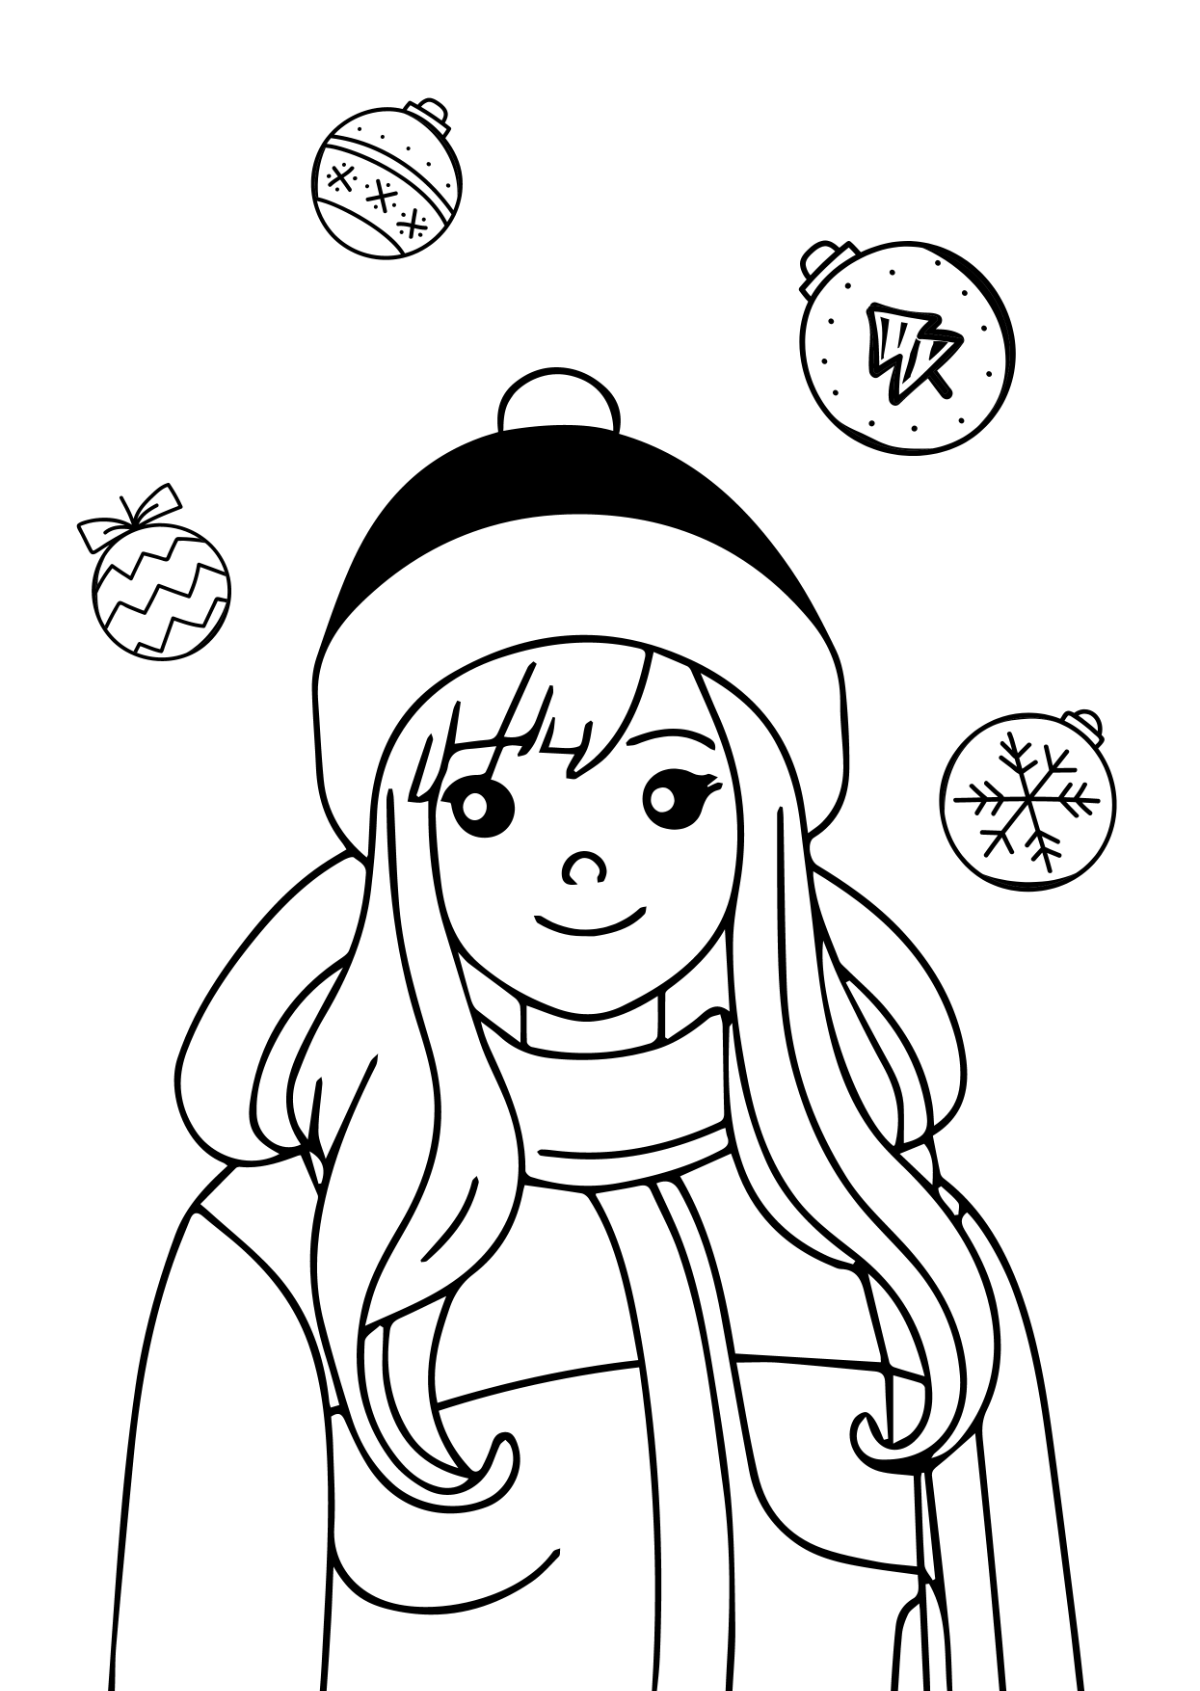 Free Anime Christmas Drawing Template